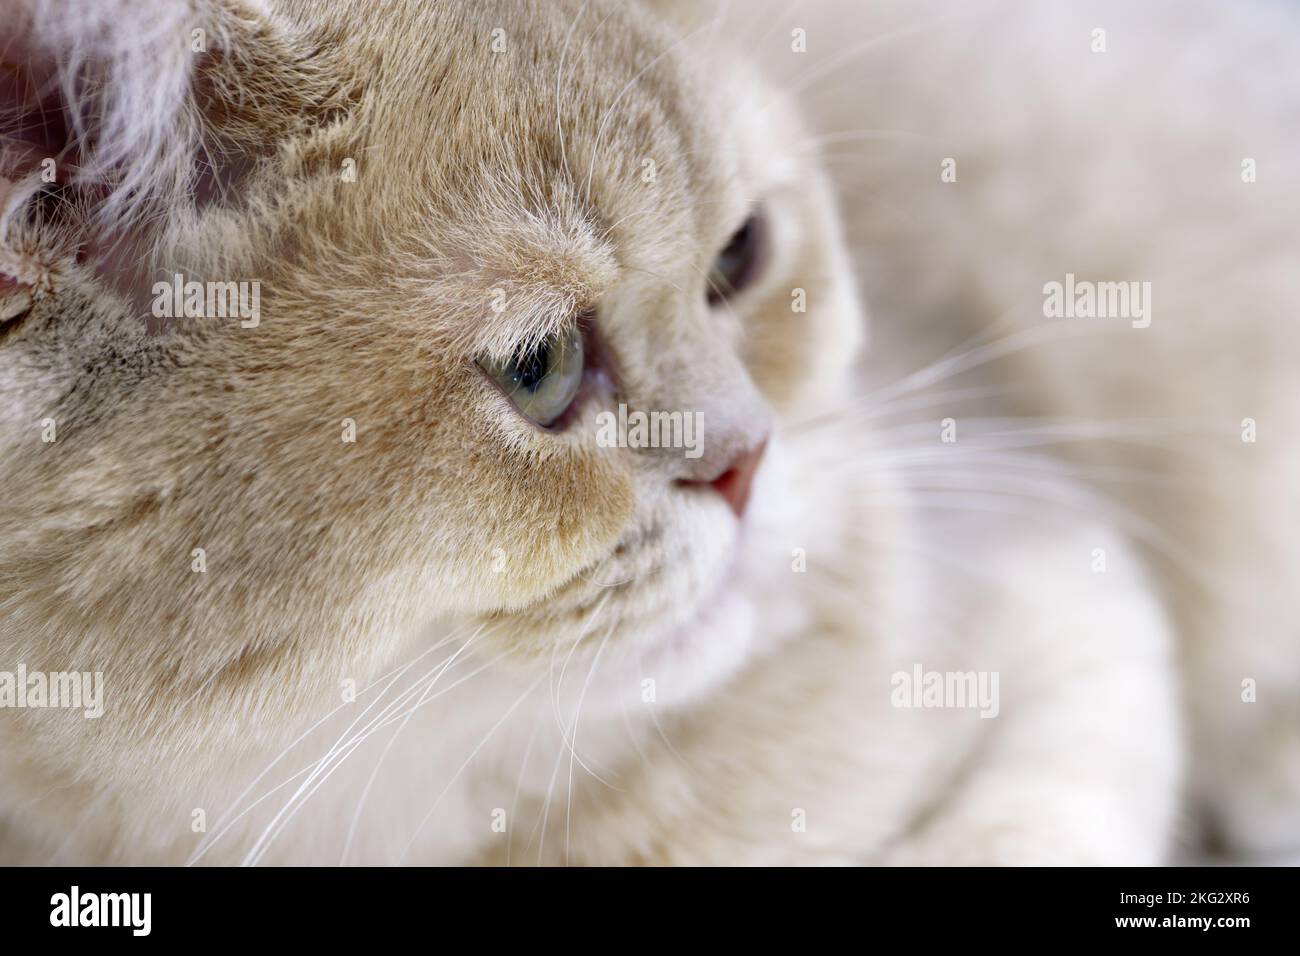 Giovane gatto shorthair britannico, pelliccia bianca e grigia, ritratto in primo piano Foto Stock